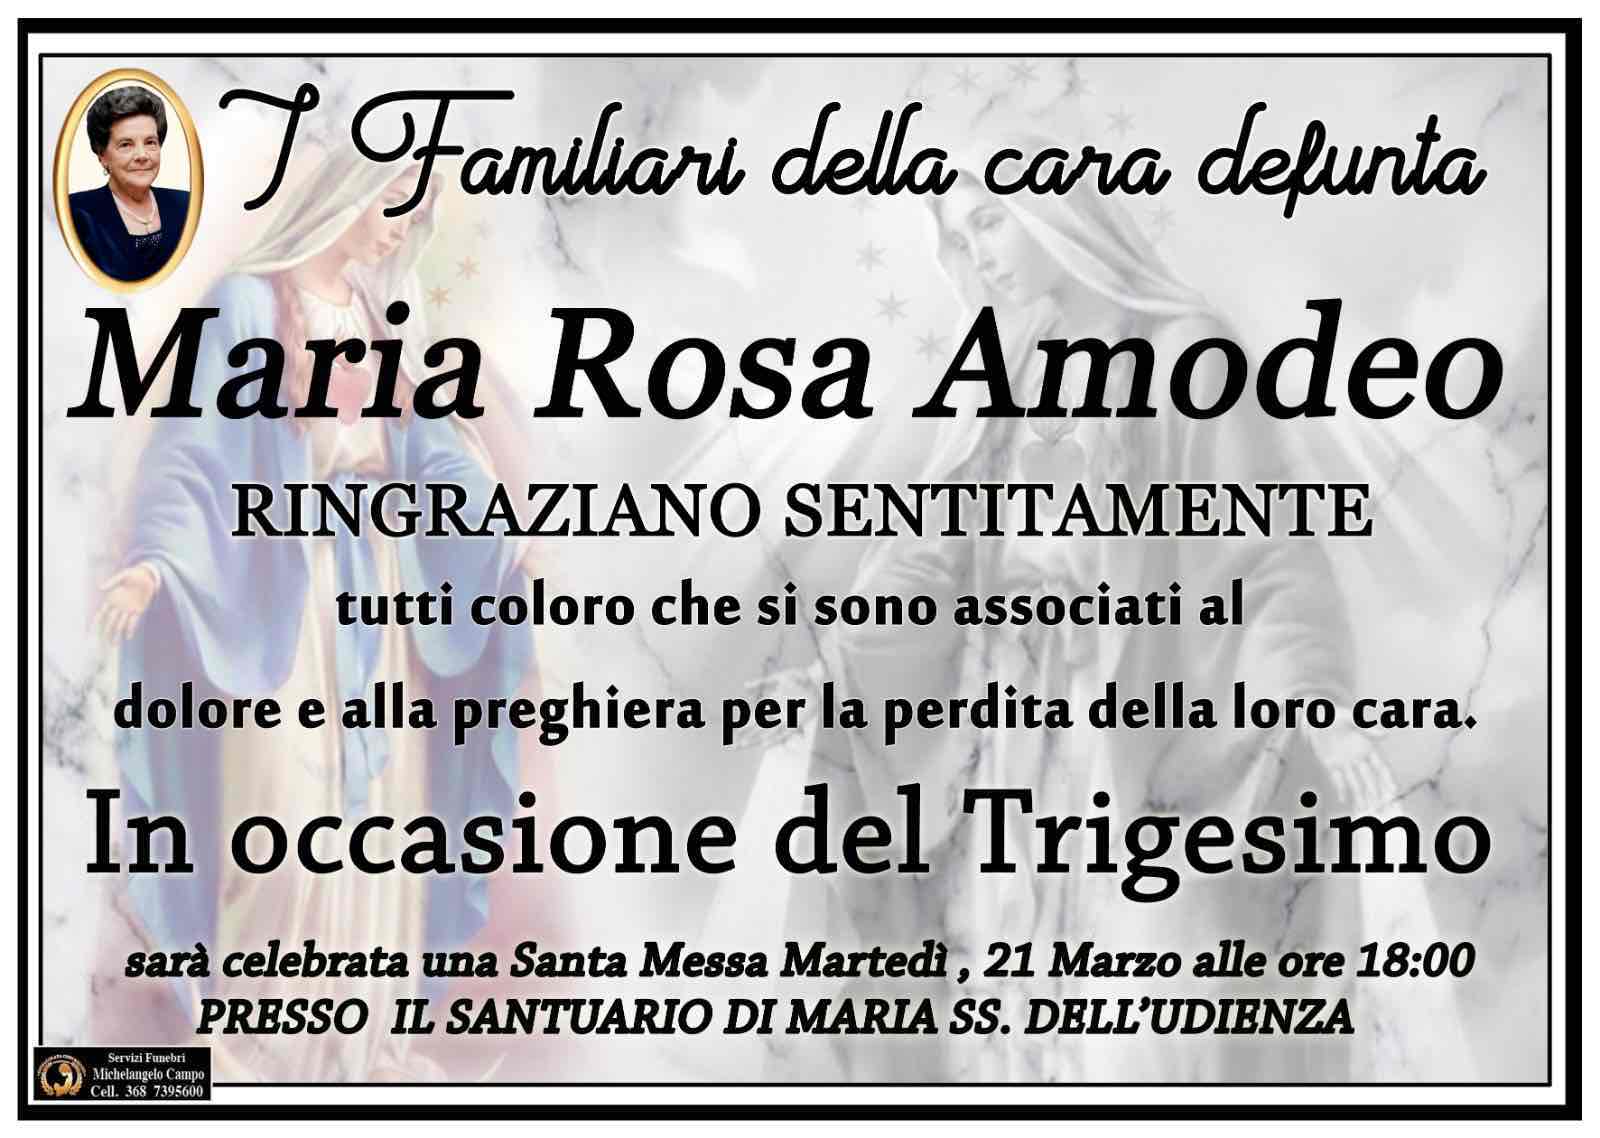 Maria Rosa Amodeo